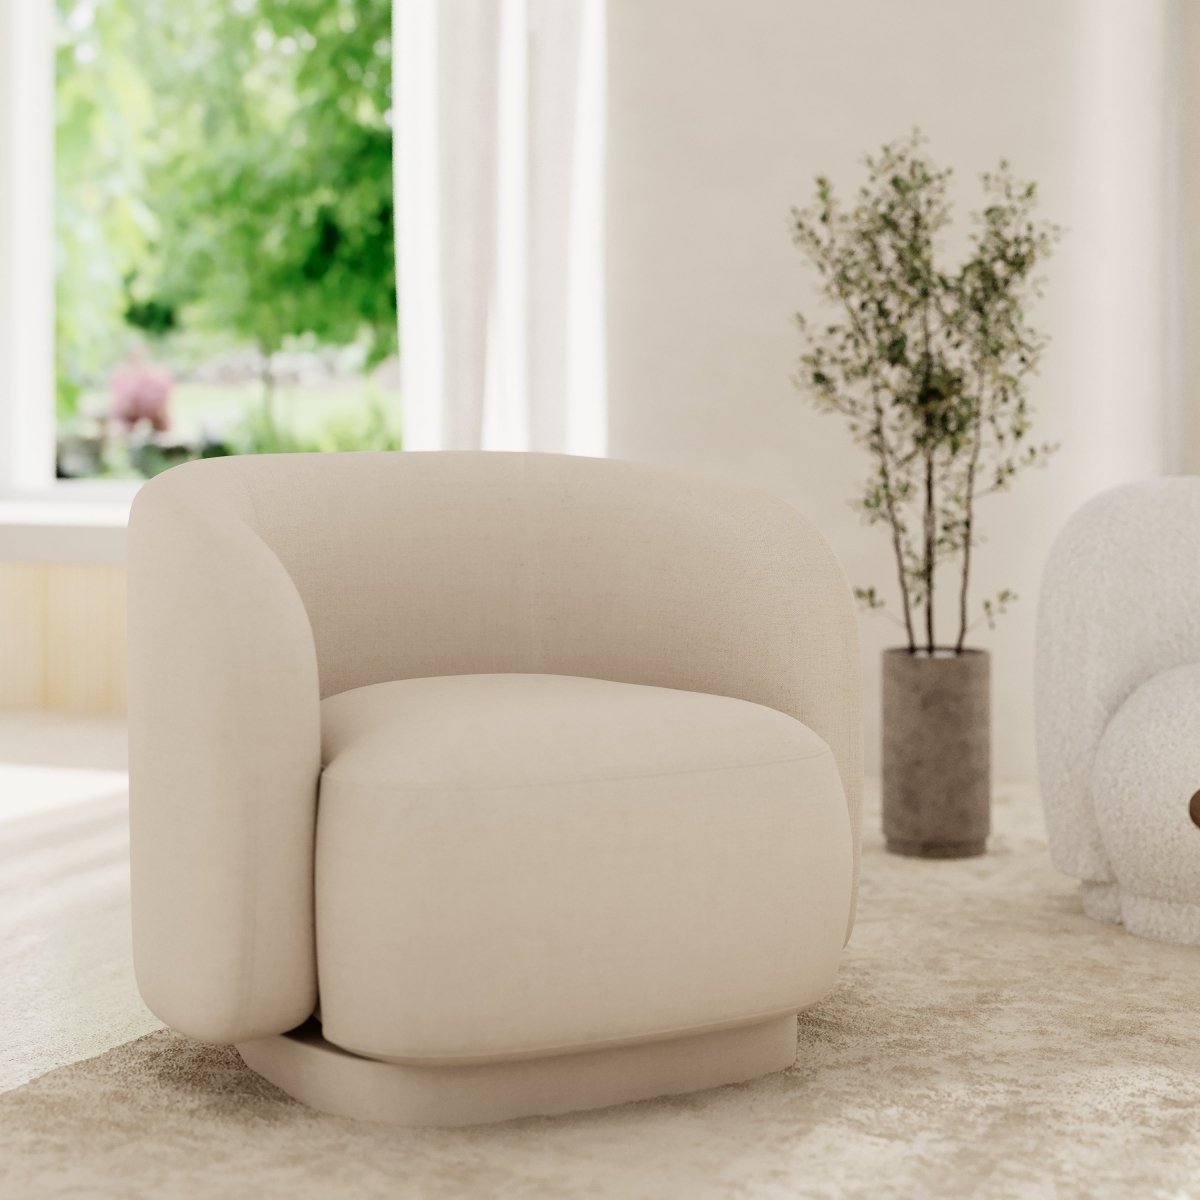 Fauteuil vintage forme organique en tissu beige - Potiron Paris, la satisfaction du fauteuil design et confortable pas cher